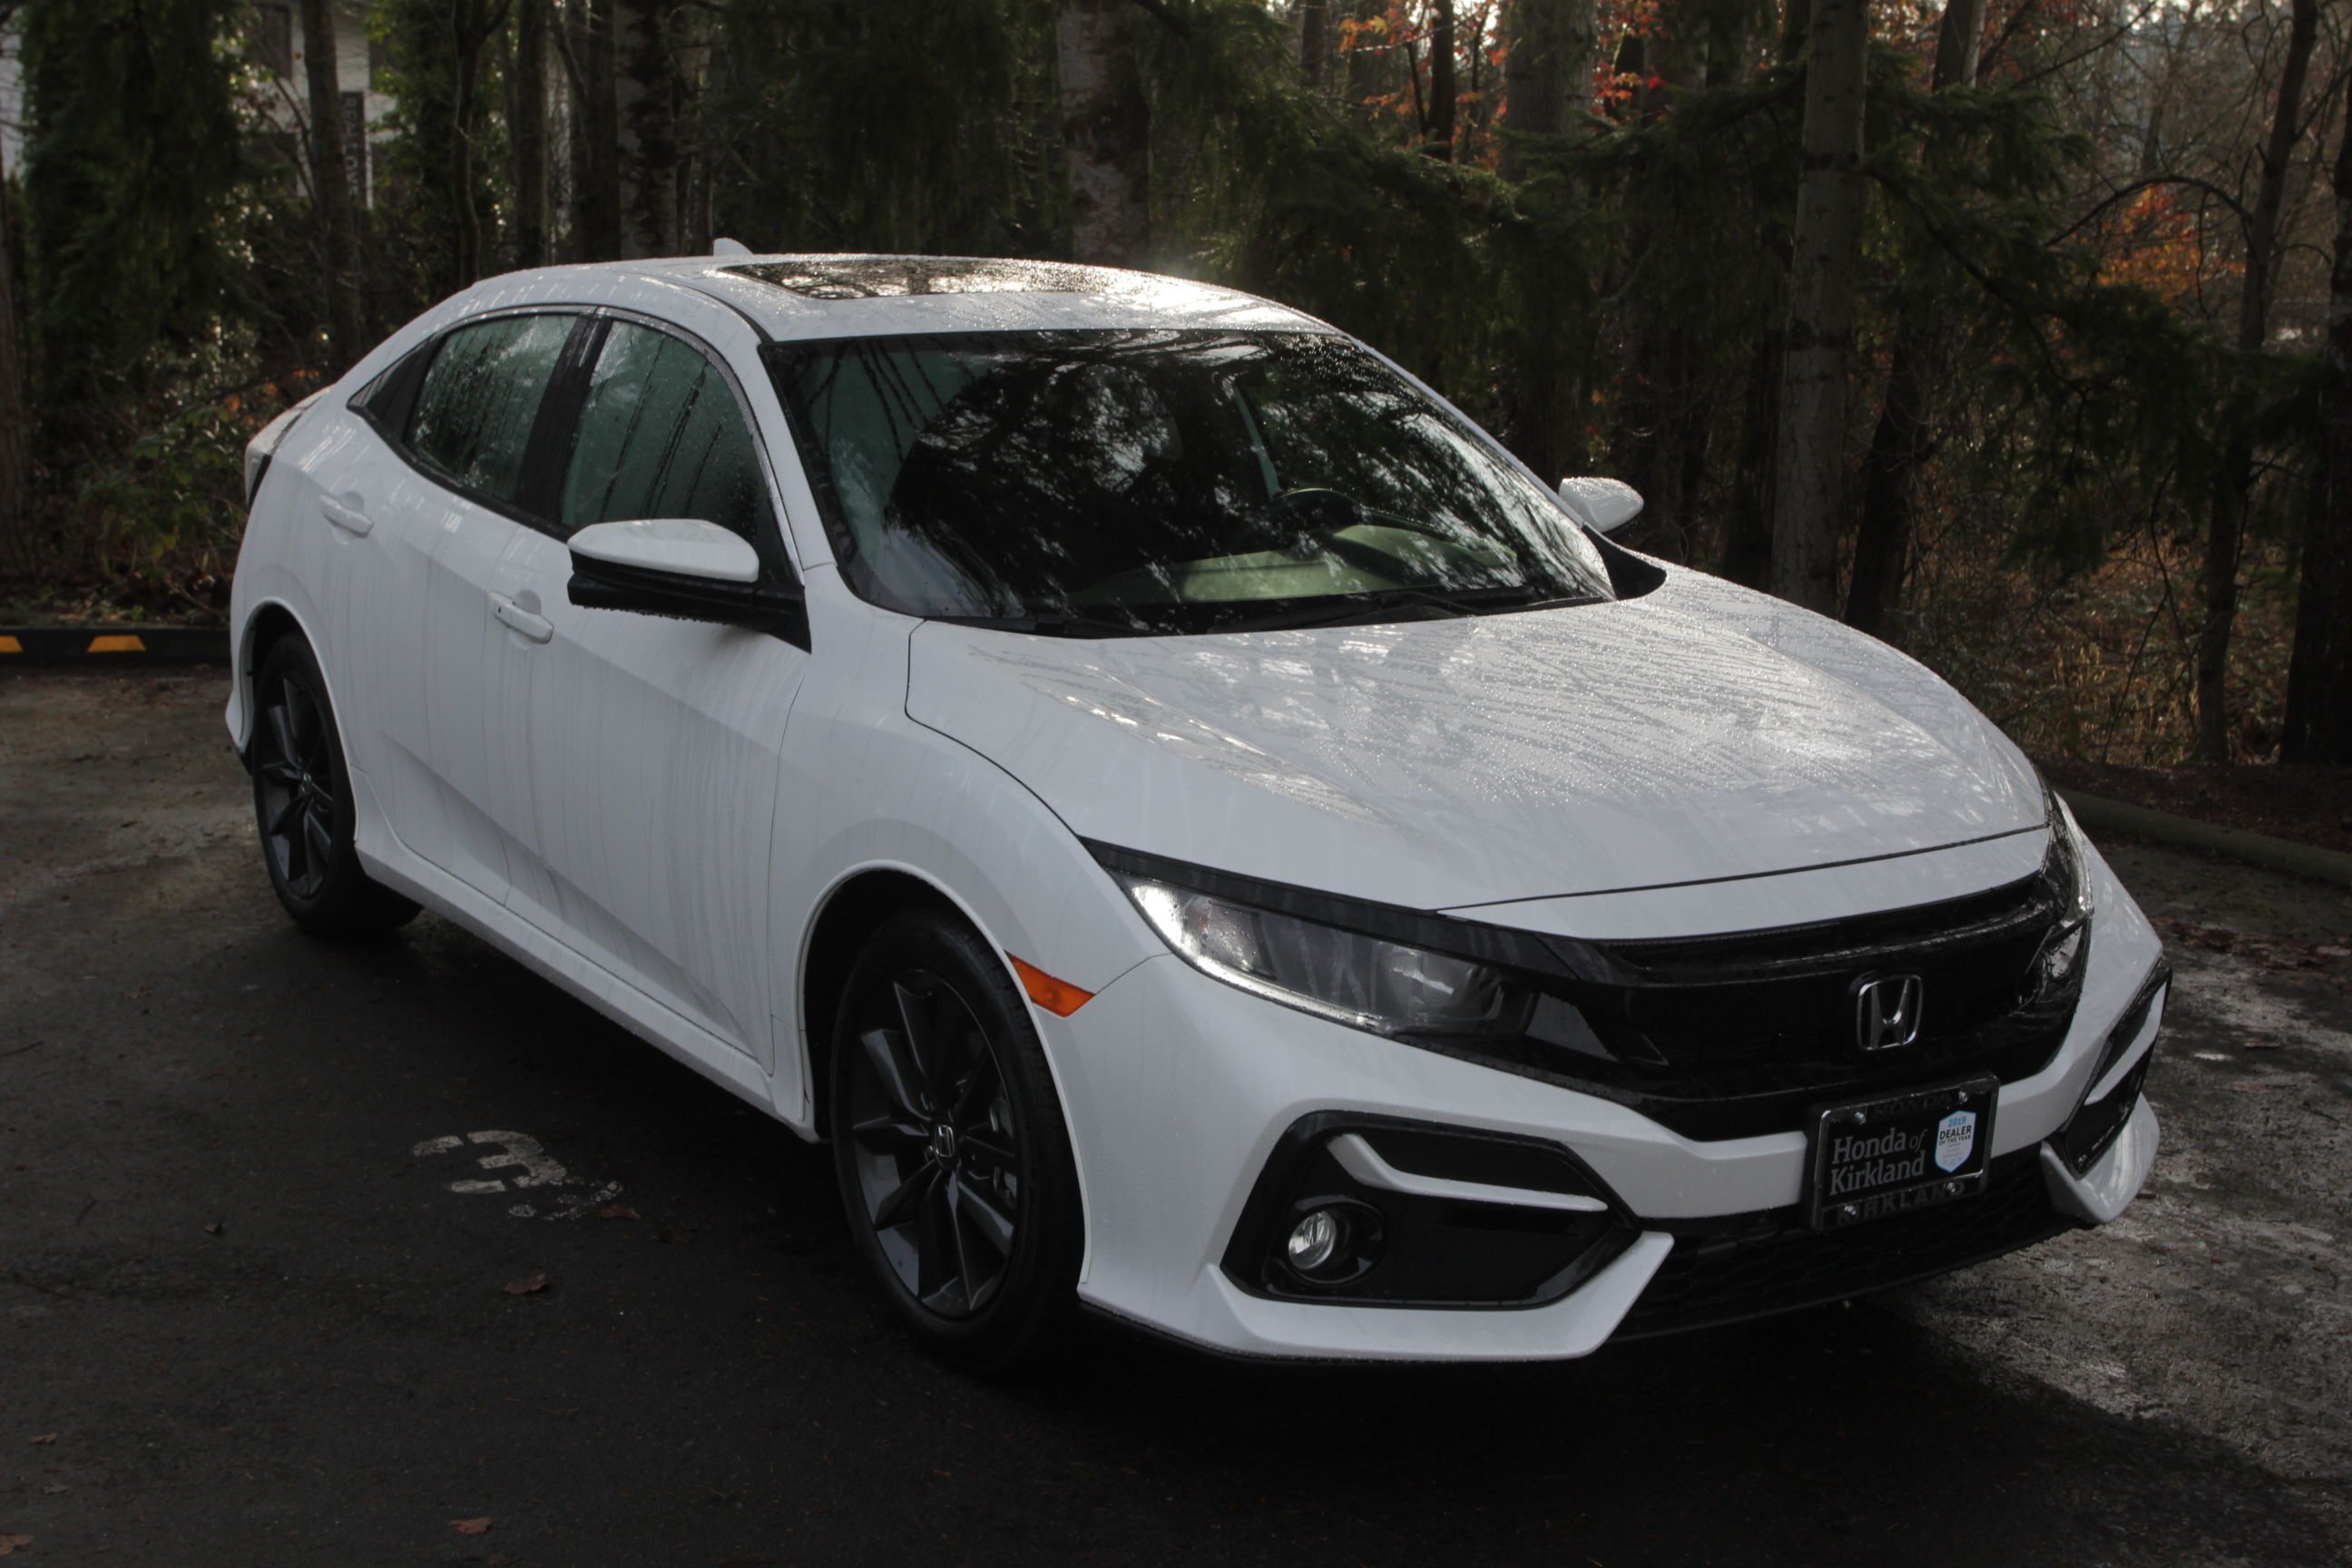 New 2020 Honda Civic Hatchback EX Hatchback in Kirkland